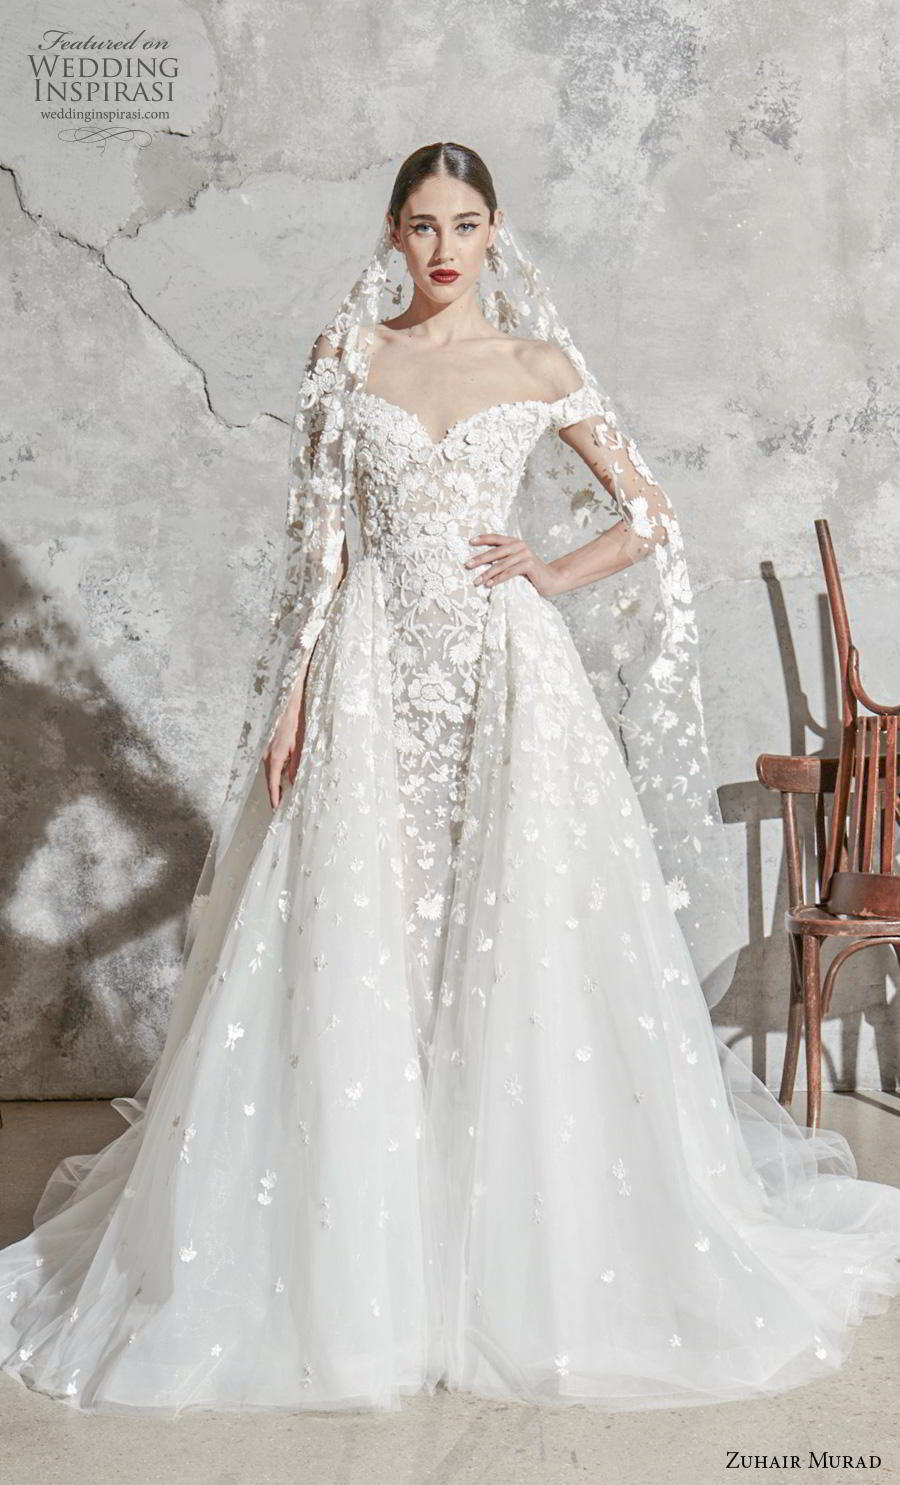 zuhair murad 2019 wedding dress